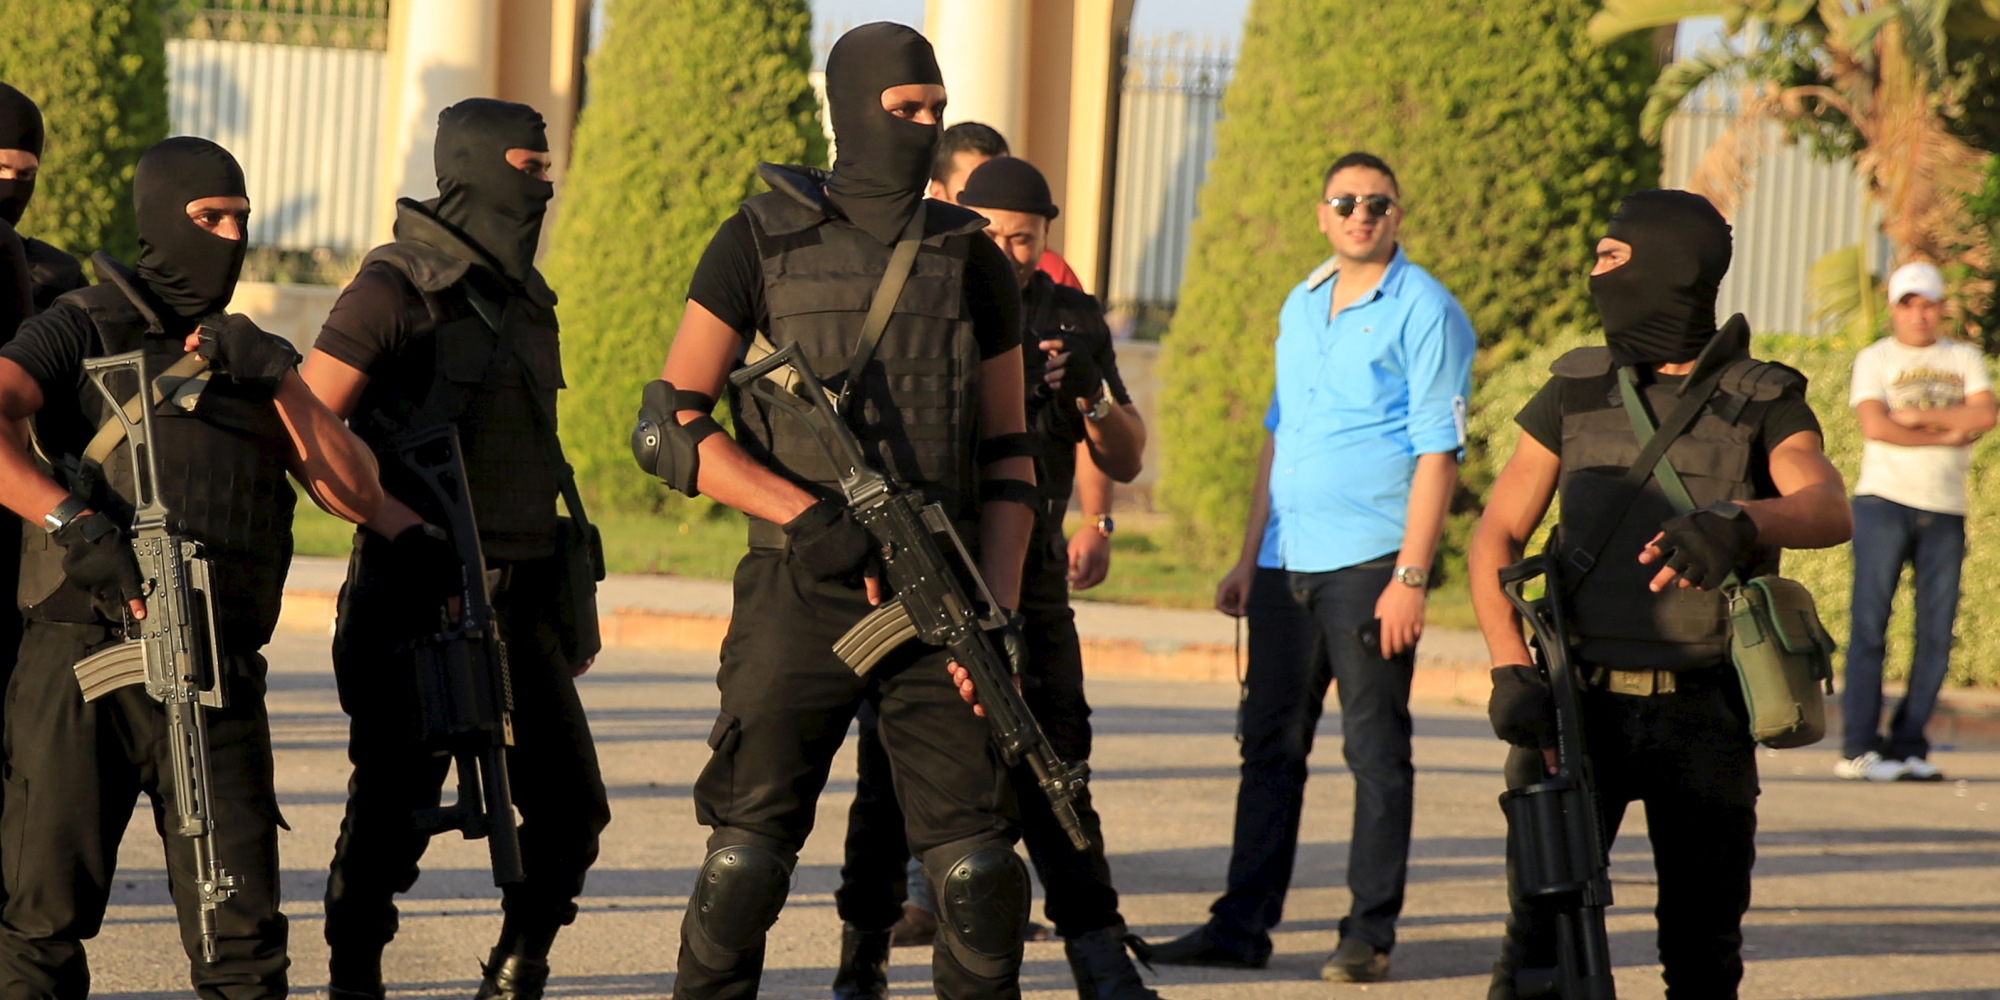   اشتباكات مُسلحة بين قوات الأمن وعناصر إجرامية بـ «أبو حزام» نجع حمادي